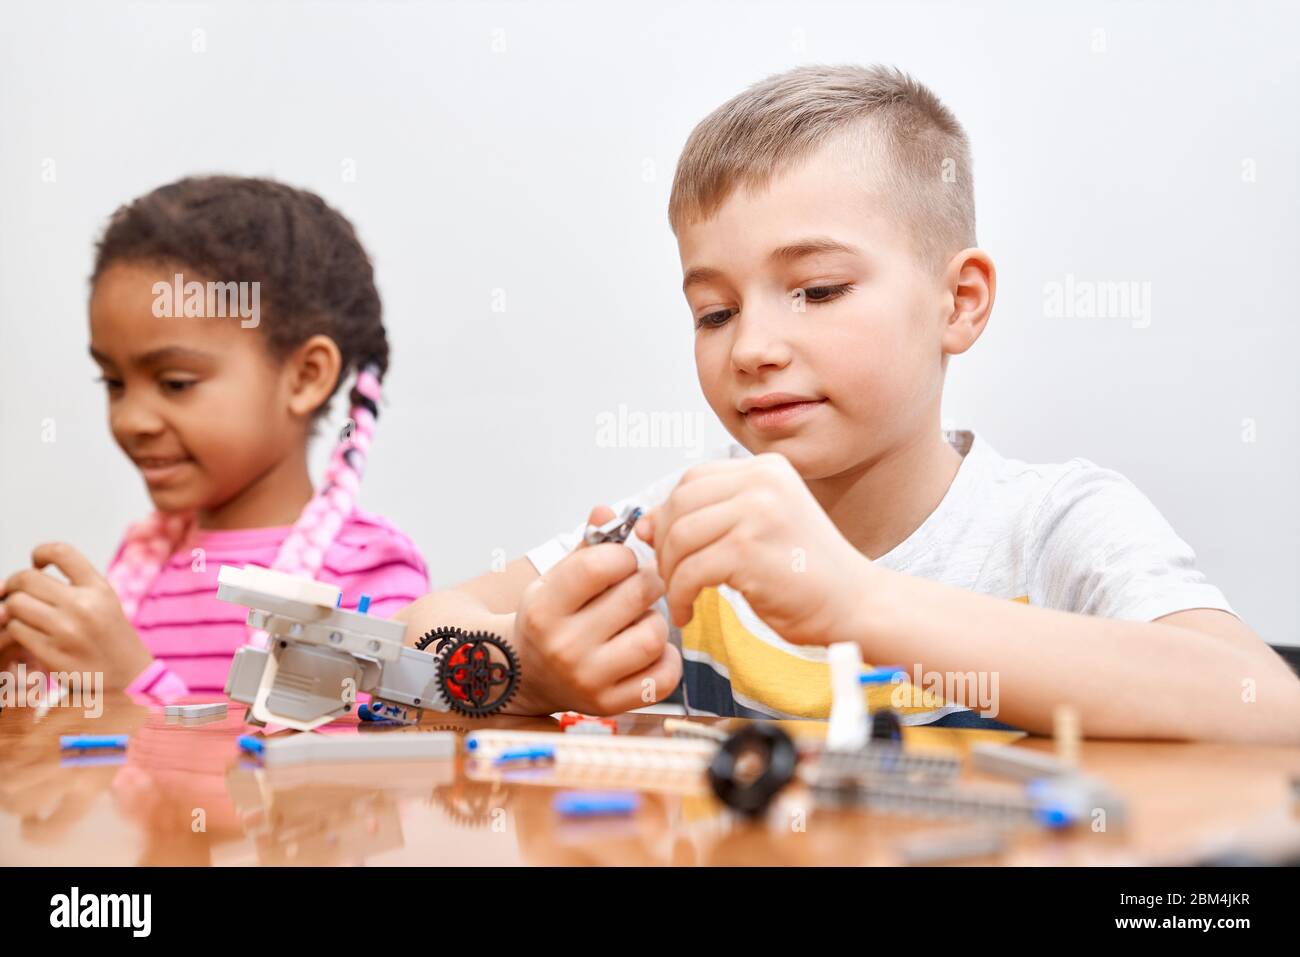 Vue de face du kit de construction pour groupe d'enfants multiraciaux créant des jouets, ayant des émotions positives et de la joie. Attention sélective de charmant garçon caucasien travaillant sur le projet, prenant des parties colorées. Banque D'Images